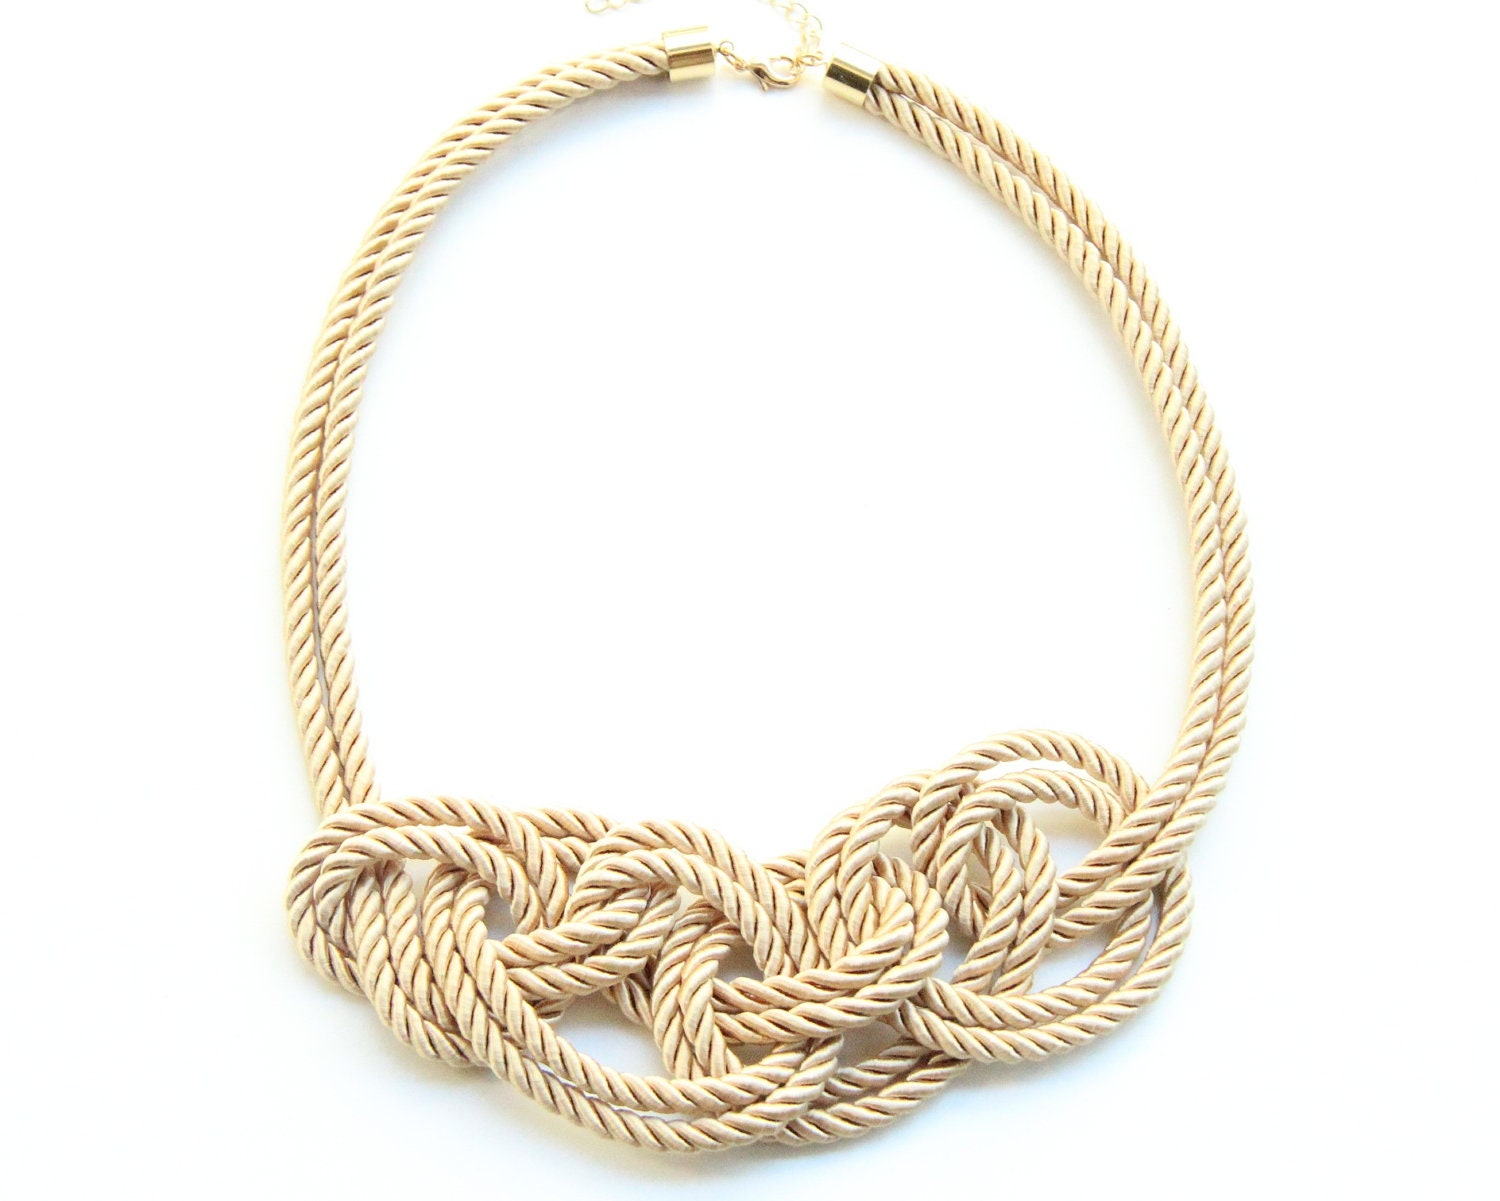 Statement Necklace bib - beige silk knot necklace